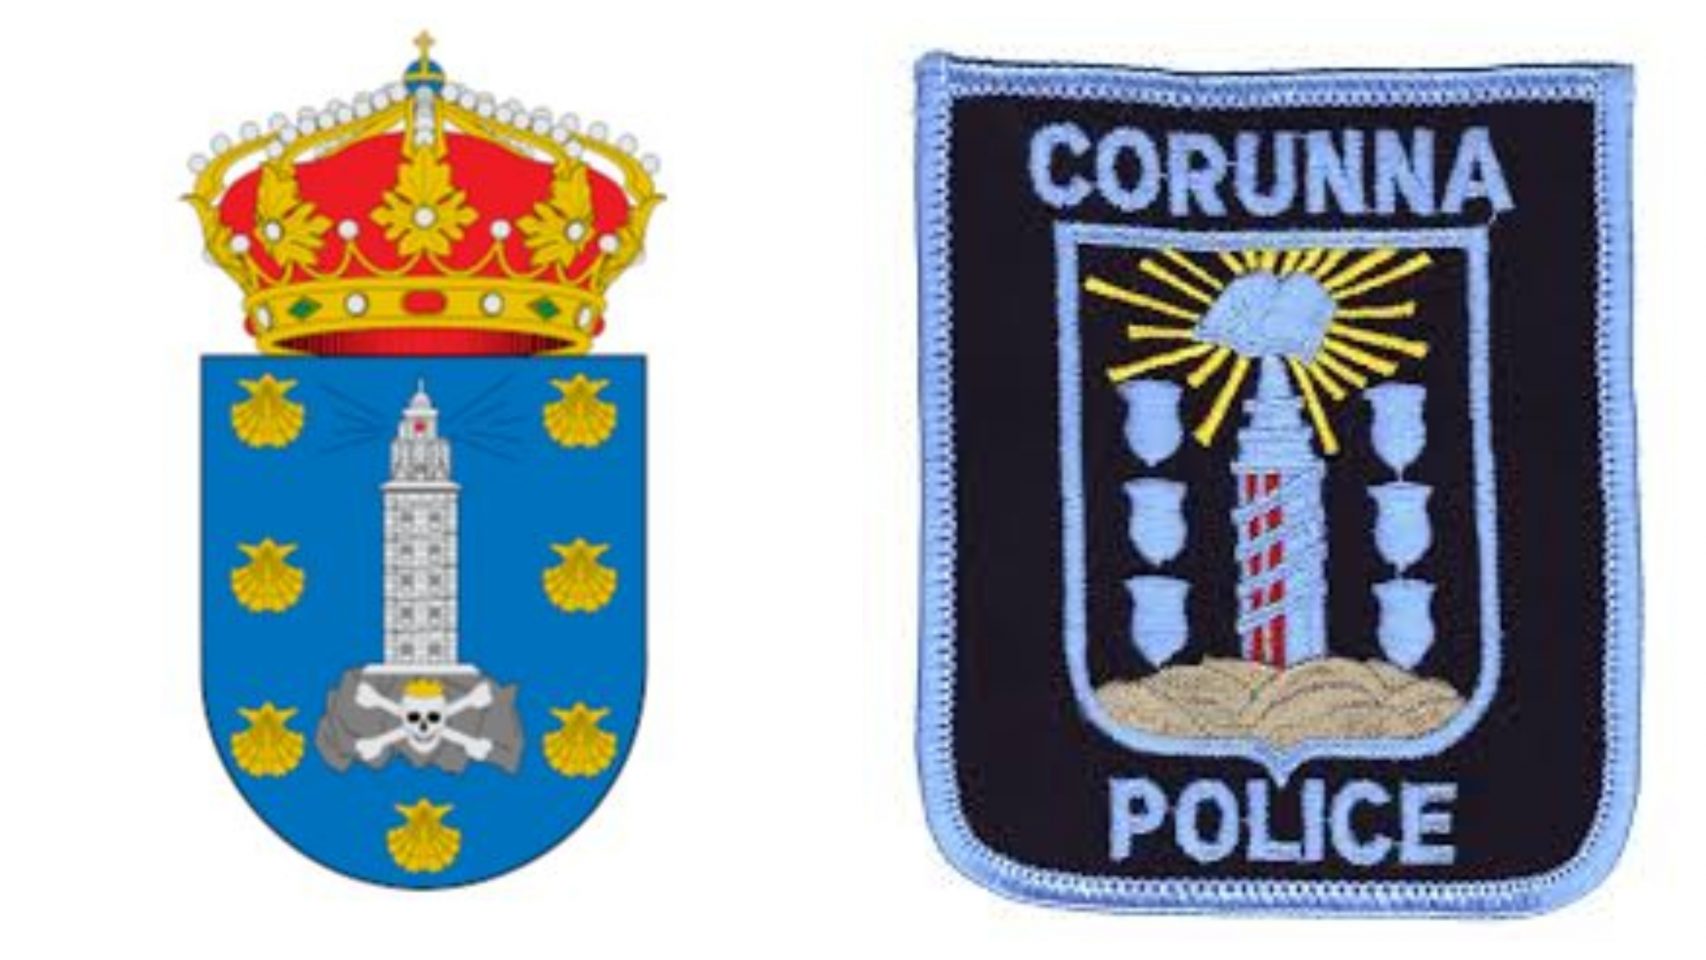 Escudo de A Coruña y escudo de la Policía de Corunna